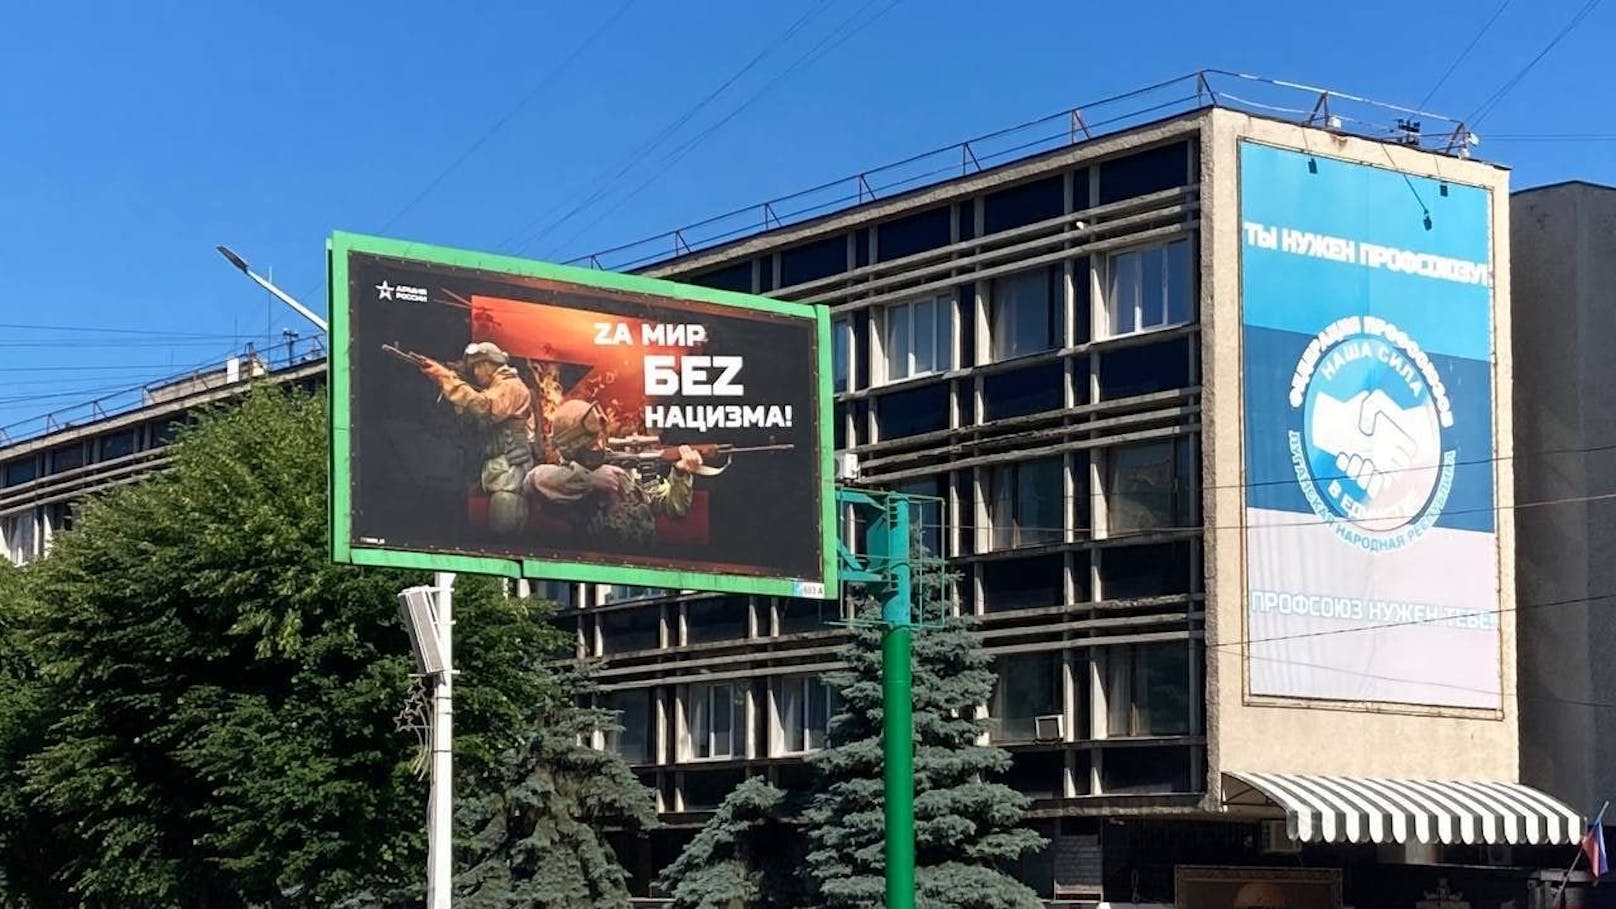 Russische Propaganda-Plakate in Luhansk: "Für einen Frieden ohne Nazis."